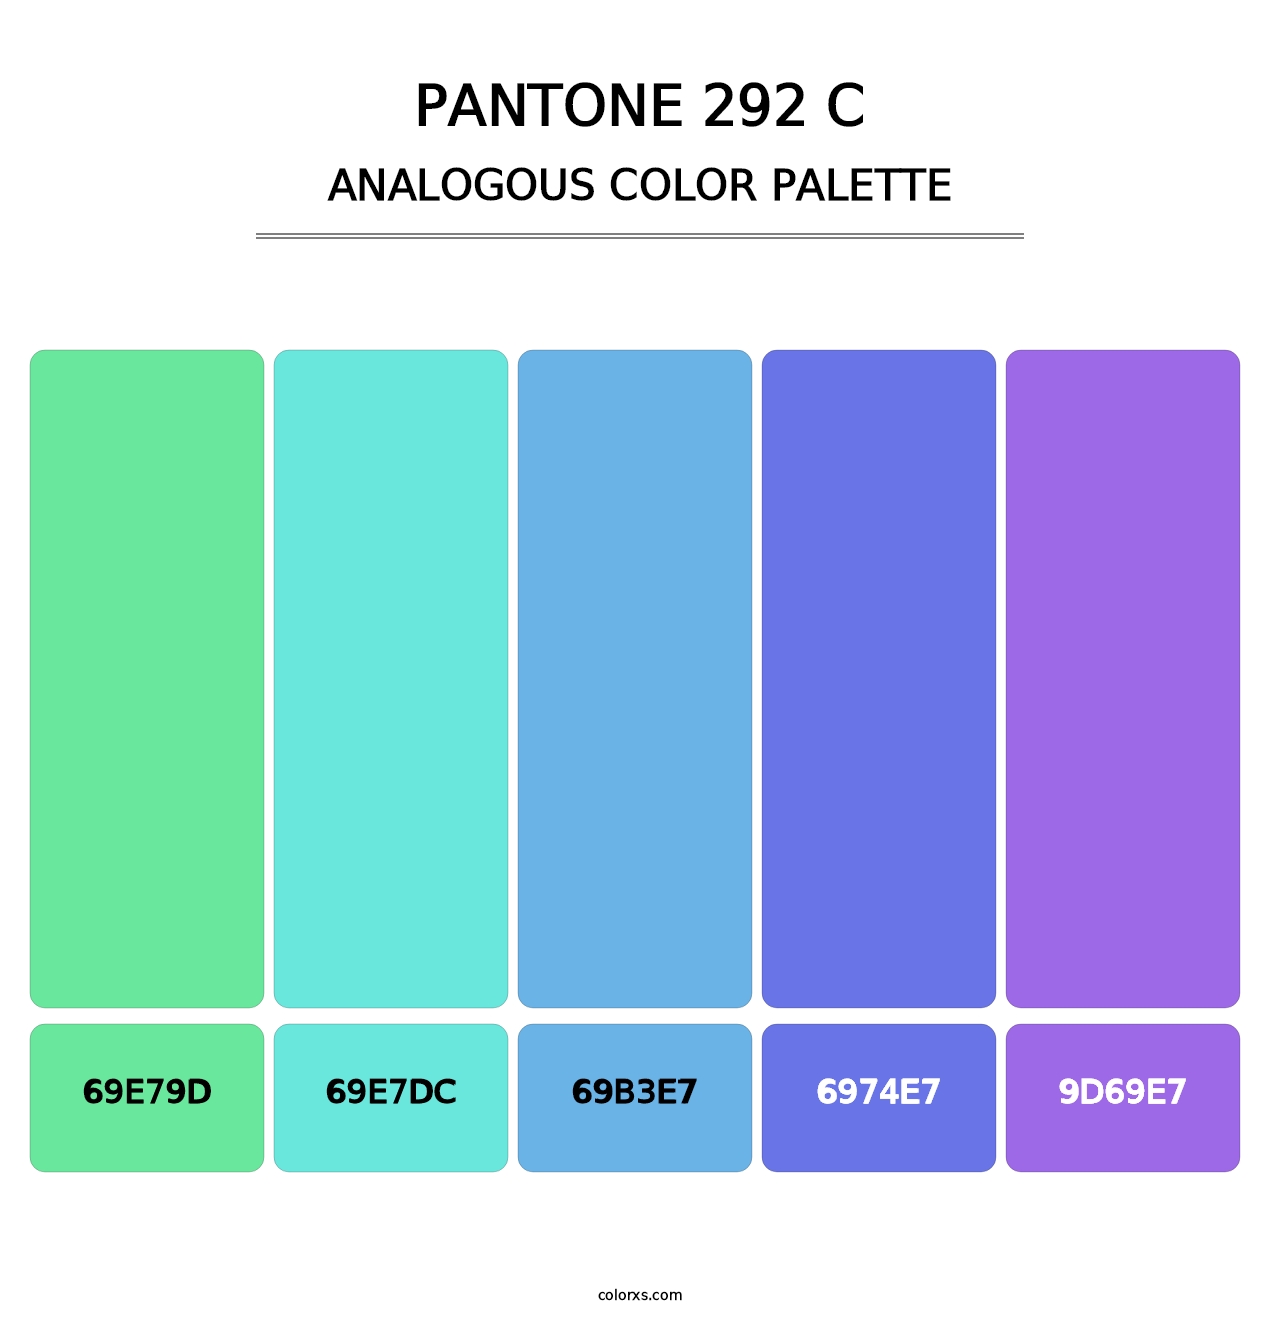 PANTONE 292 C - Analogous Color Palette